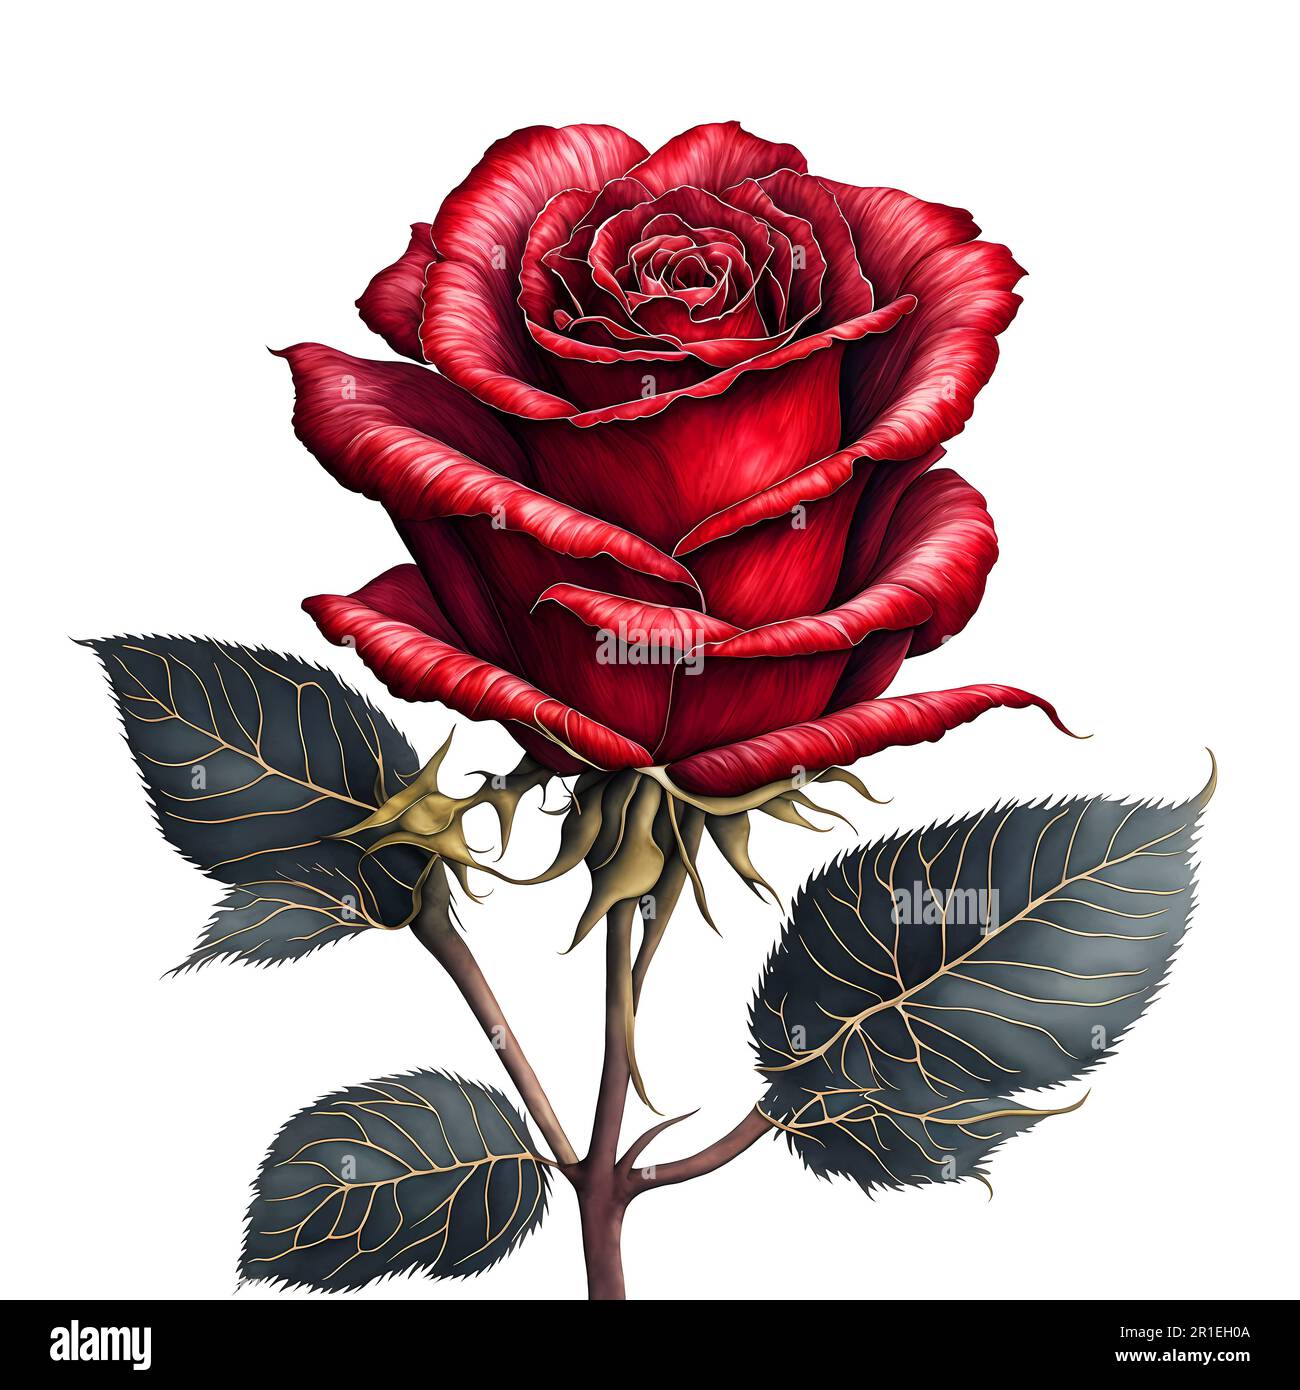 Superbes illustrations de roses aquarelle sur fond blanc Banque D'Images